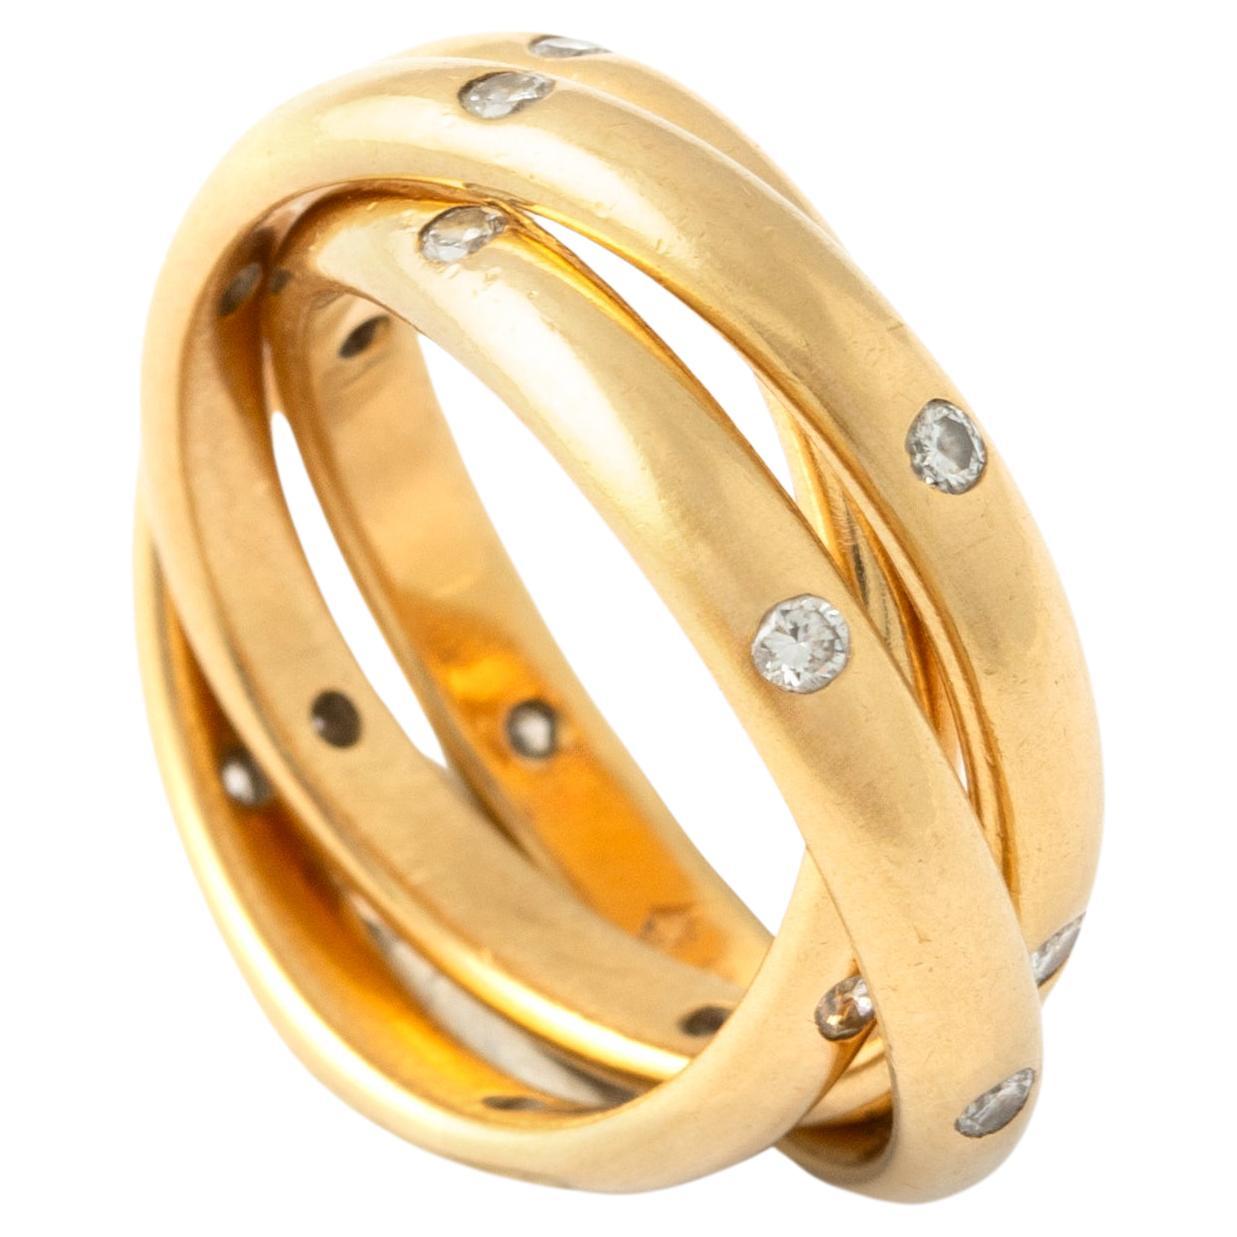 Cartier, bague Trinity en or 18 carats avec constellation de diamants